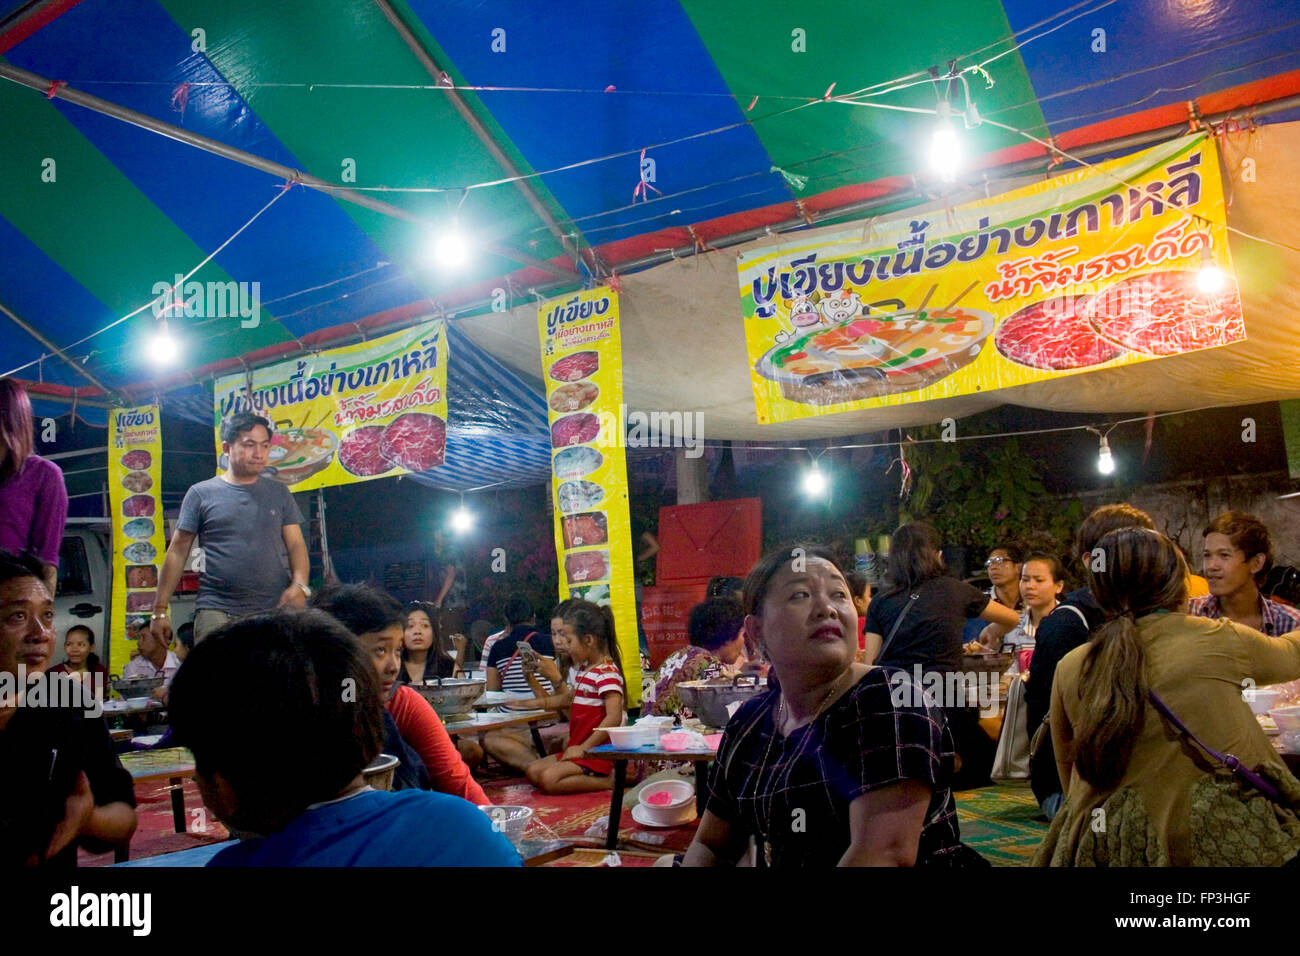 Kambodschaner sind zusammengekommen, um in Kampong Cham, Kambodscha Essen aus Thailand auf einer Straße Messe. Stockfoto